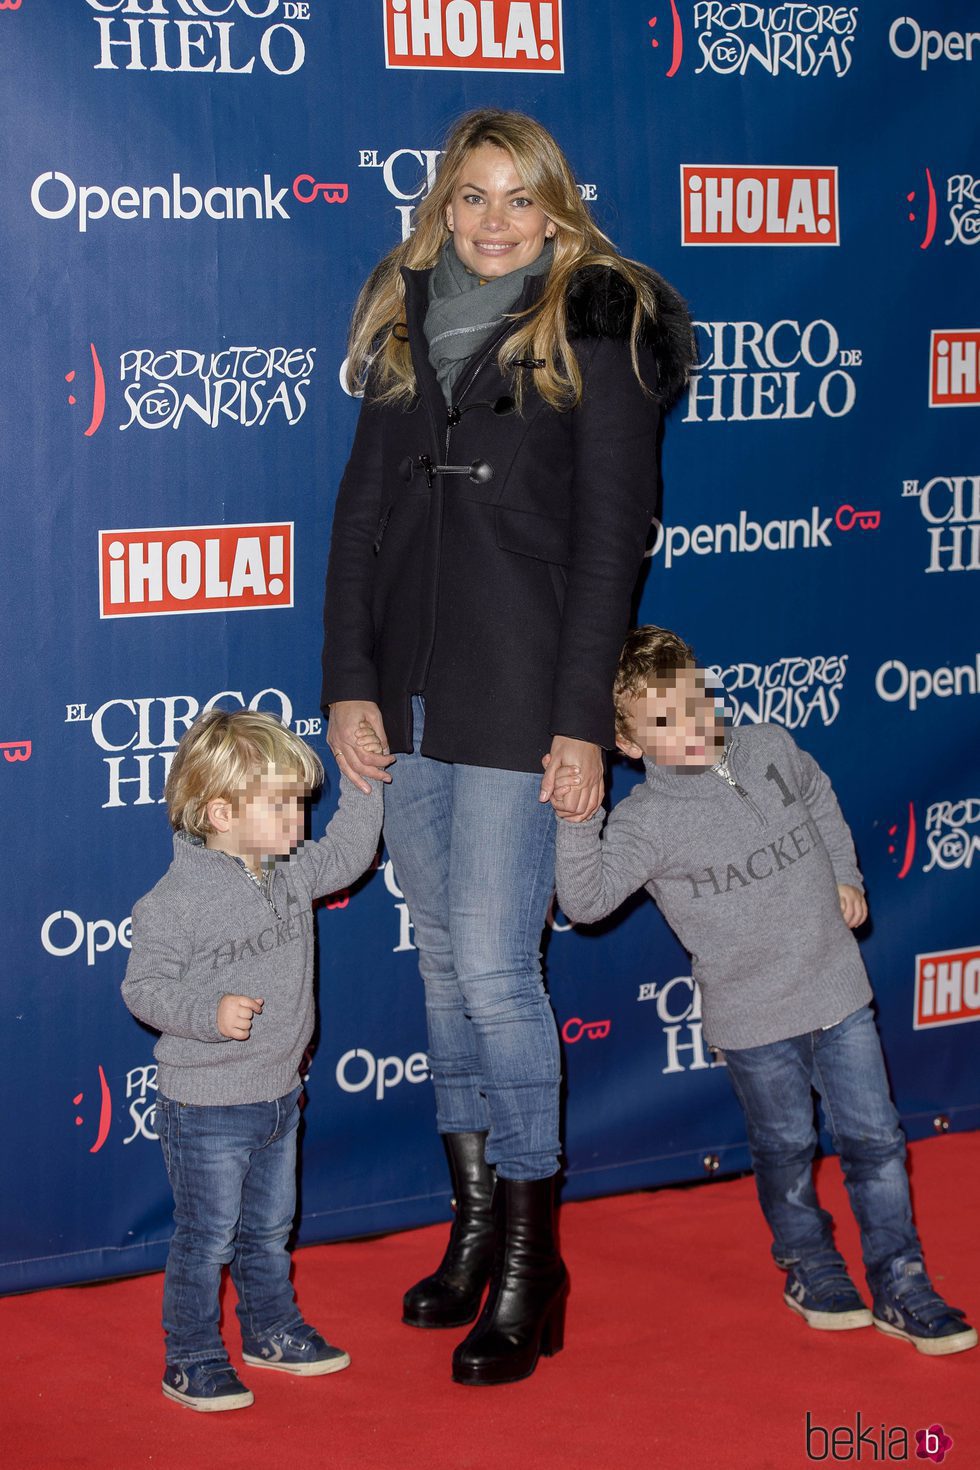 Carla Goyanes y sus dos hijos en el estreno del Circo del Hielo